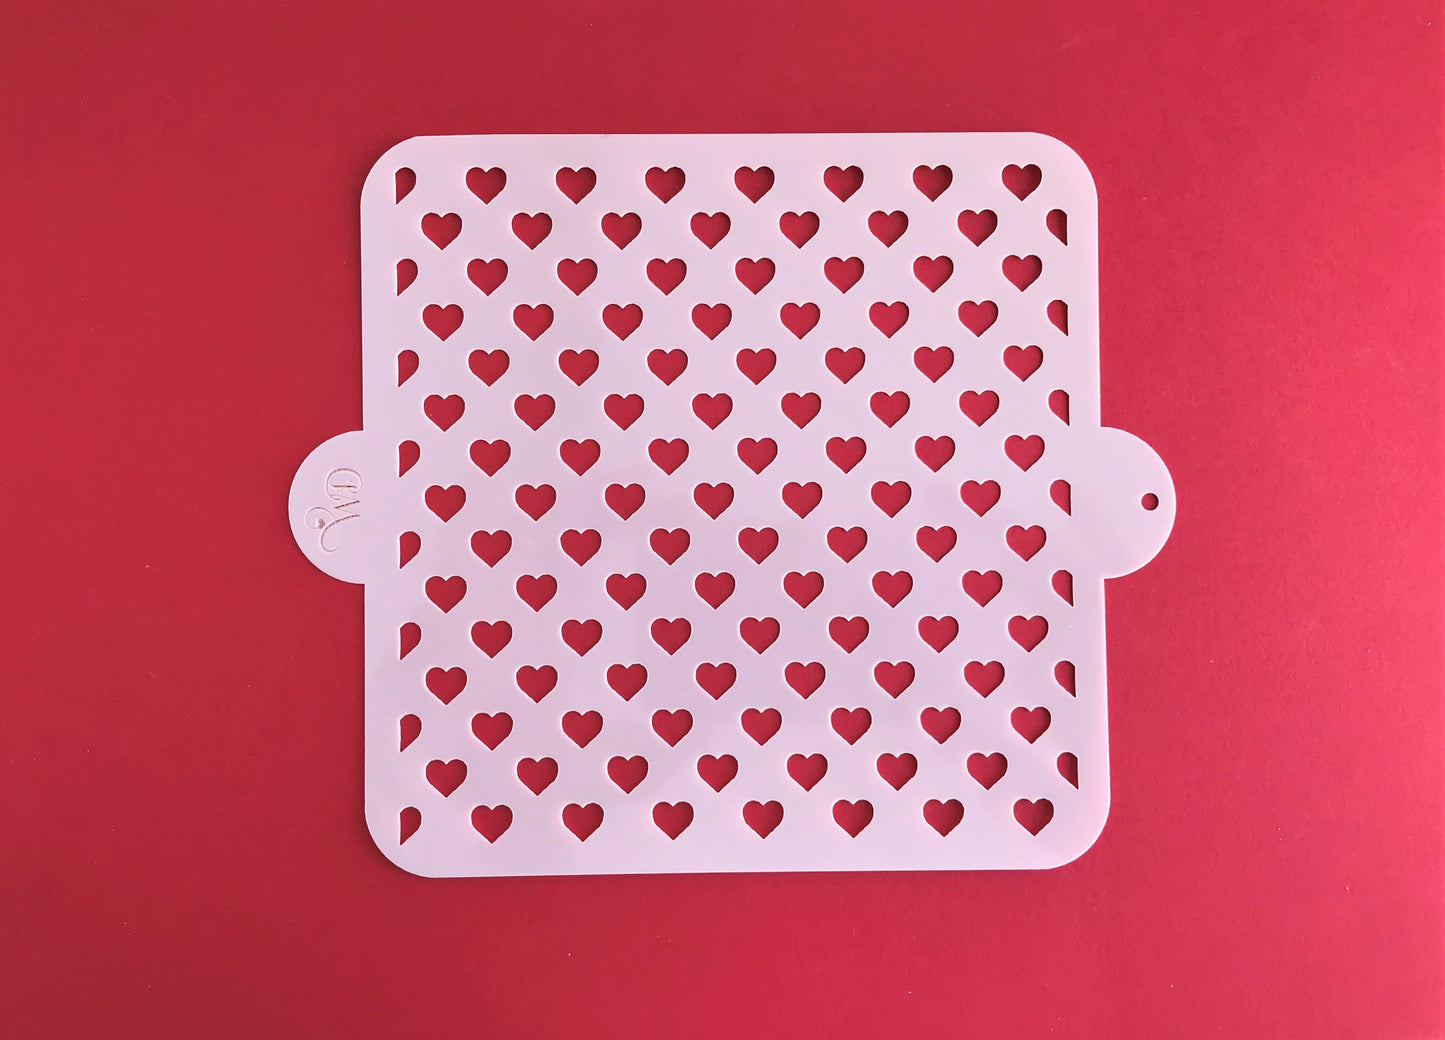 Mini hearts Stencil. Repeat Design.